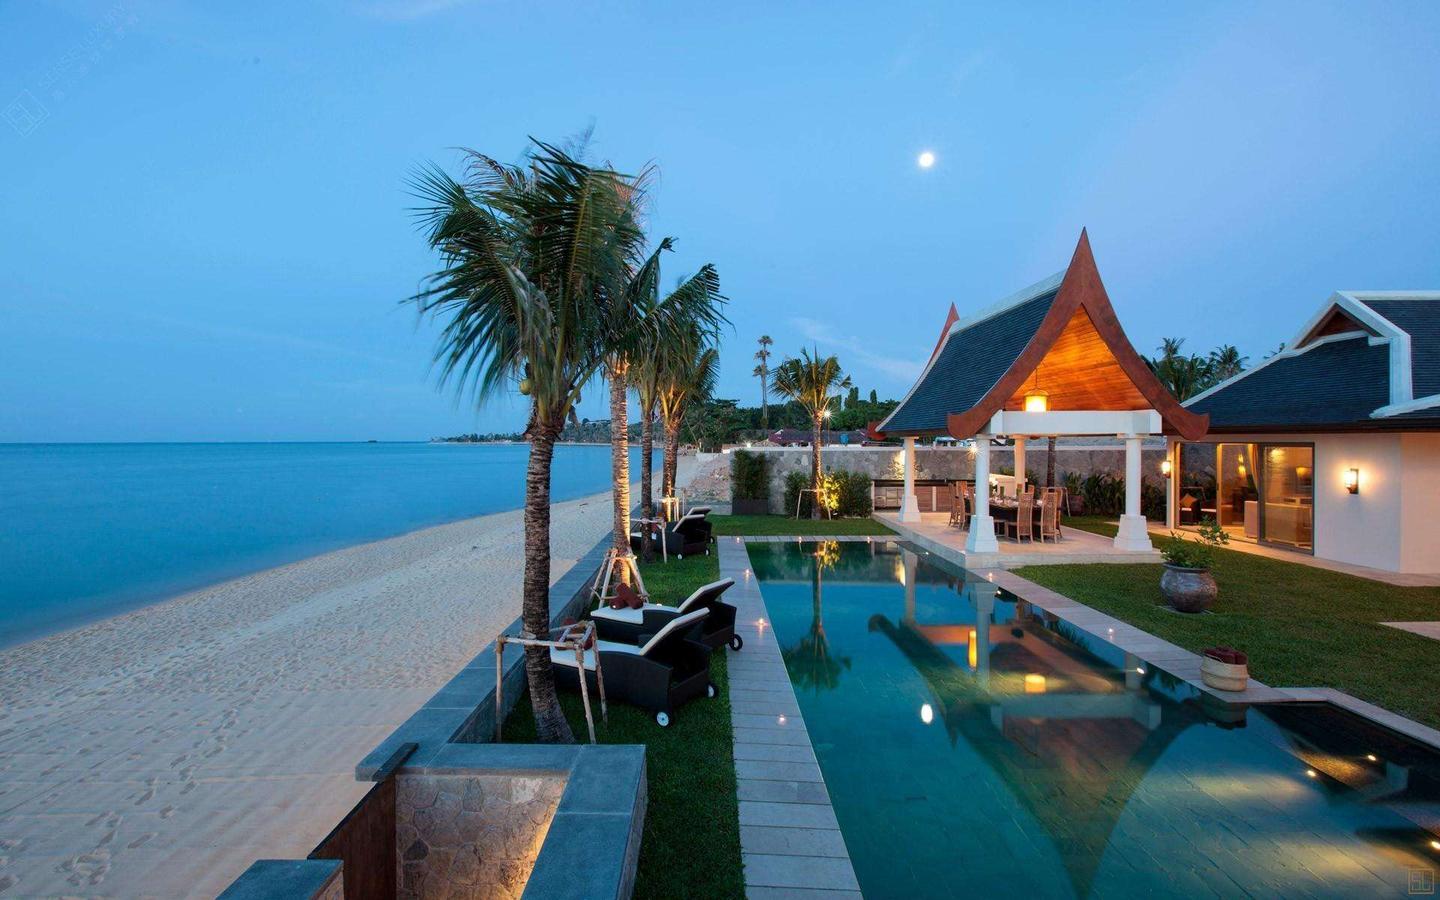 泰国芭提雅葡萄园豪华泳池别墅 Vineyard | 泰国房产网